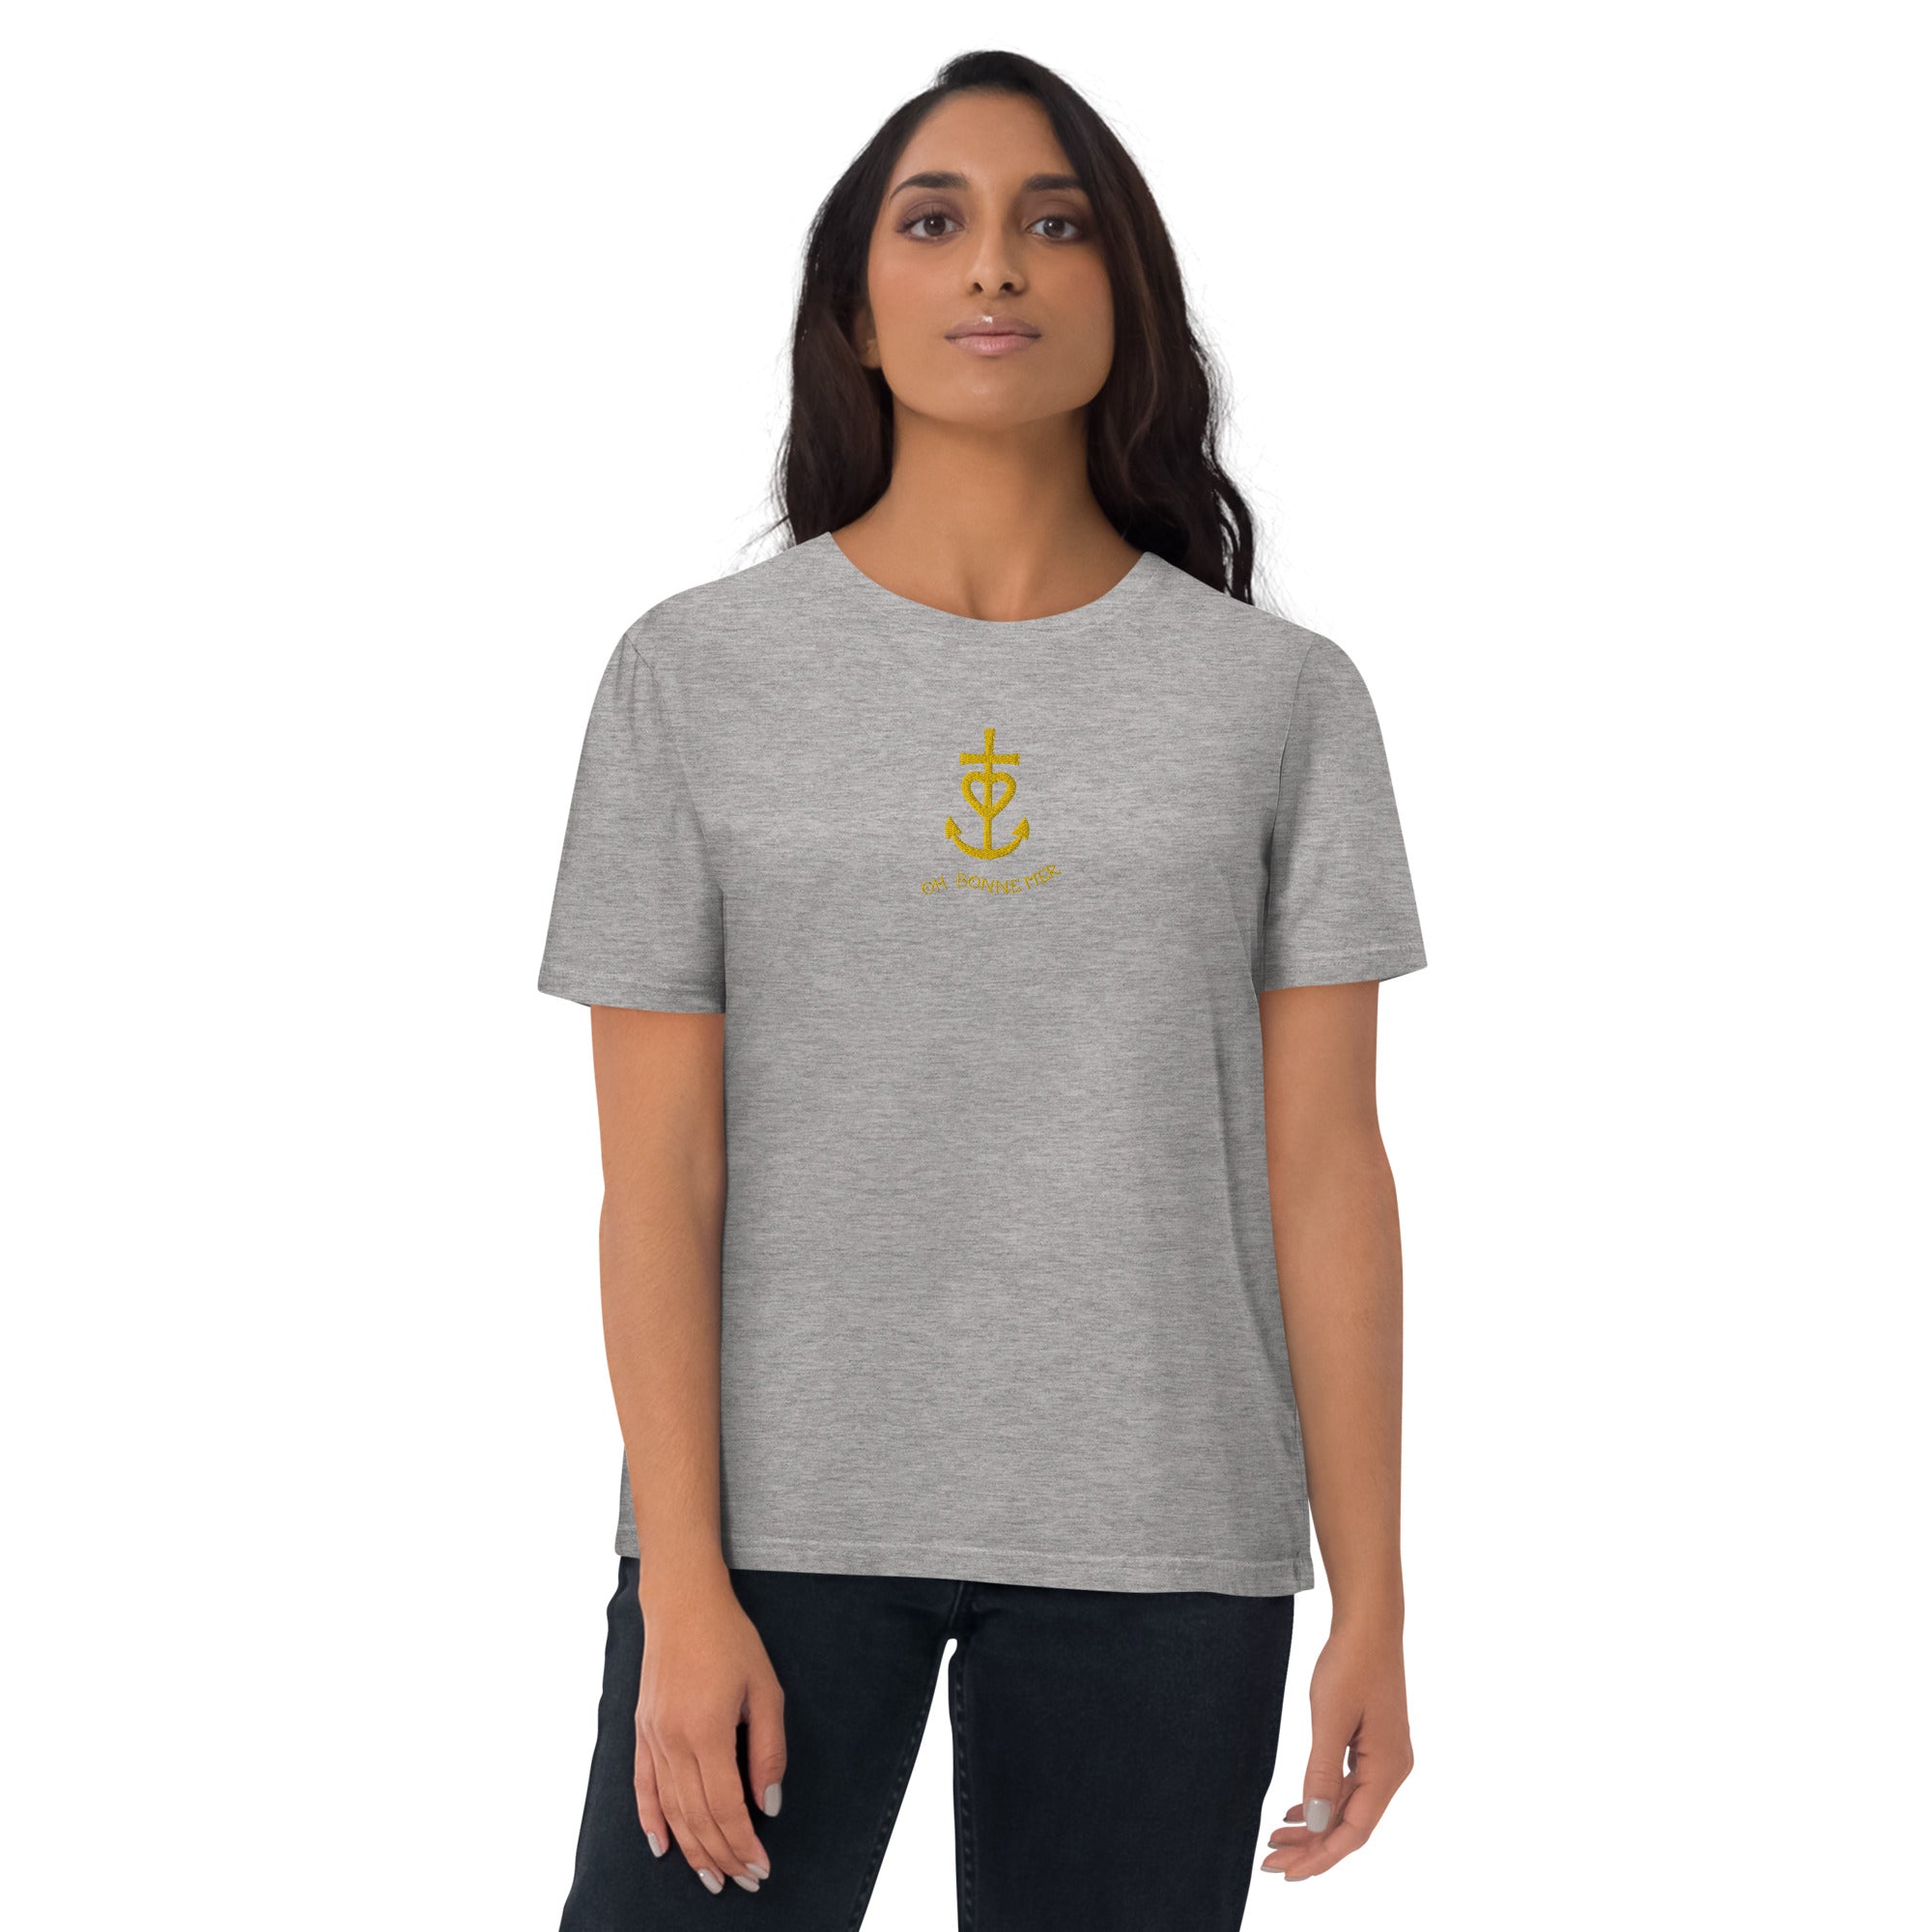 T-shirt unisexe en coton biologique Croix de Camargue dorée Oh Bonne mer brodé sur couleurs claires